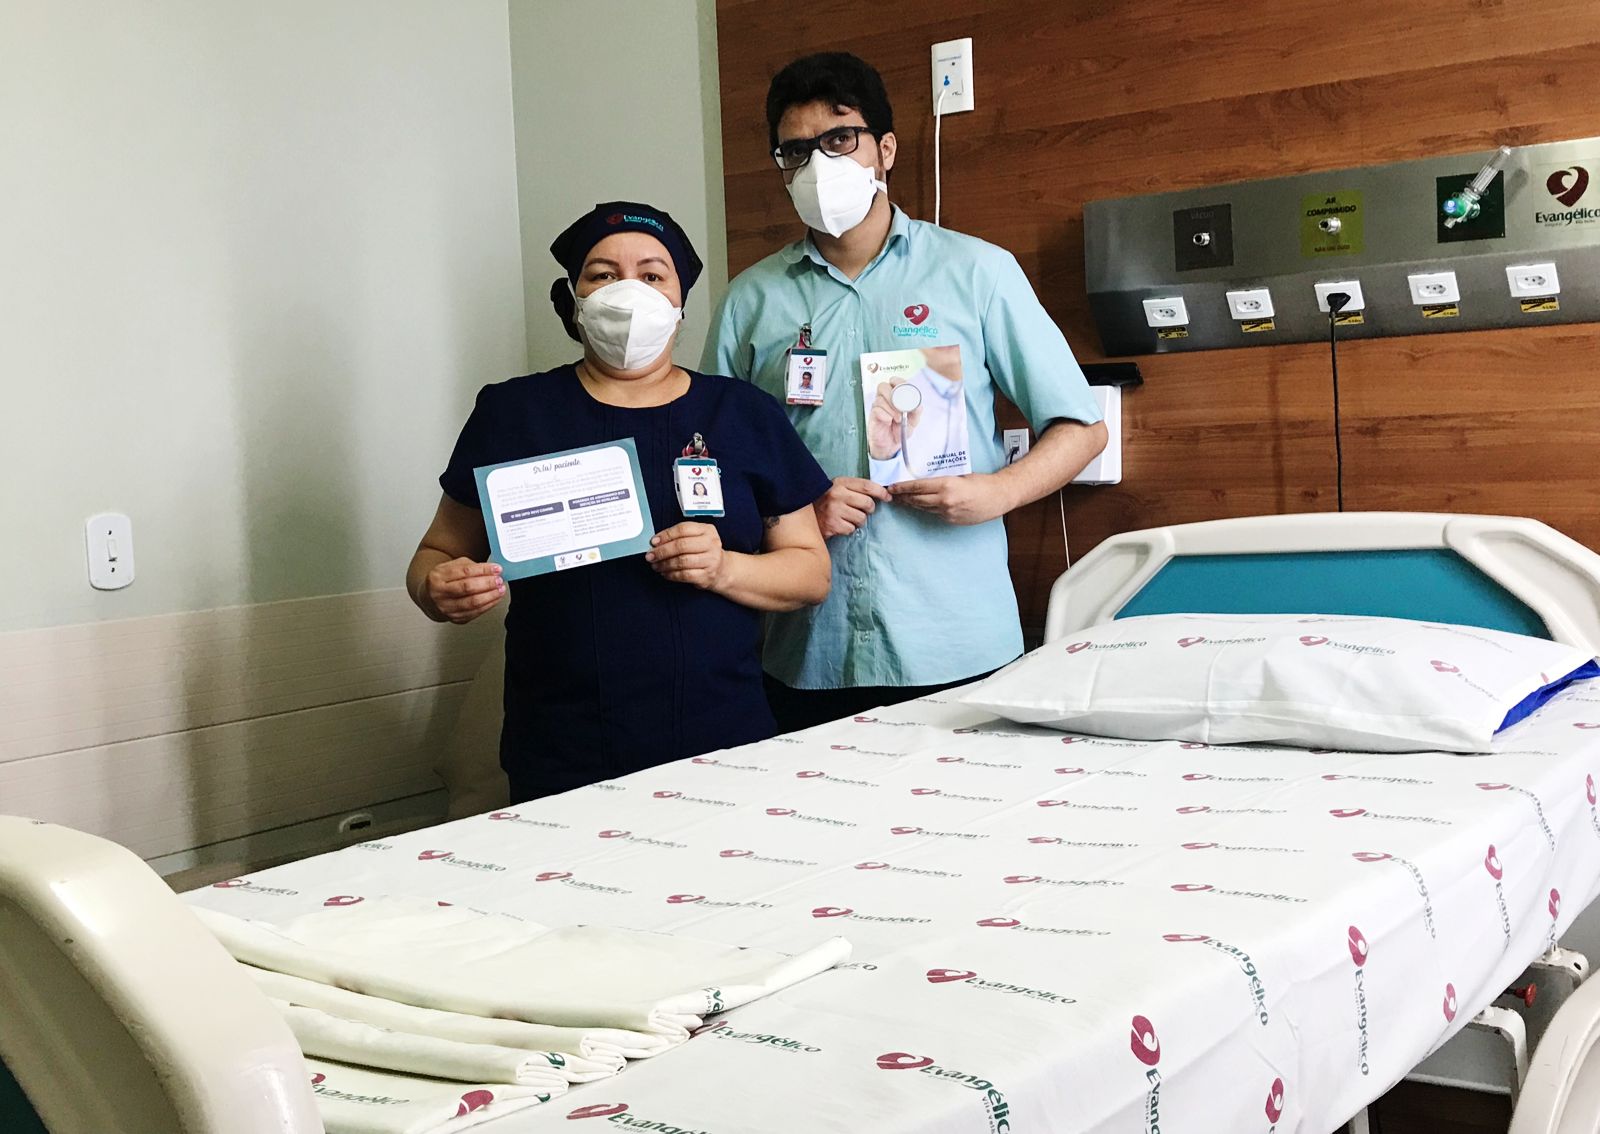 Hospital Evangélico participa de fórum sobre atenção domiciliar - Hospital  Evangélico de Vila Velha